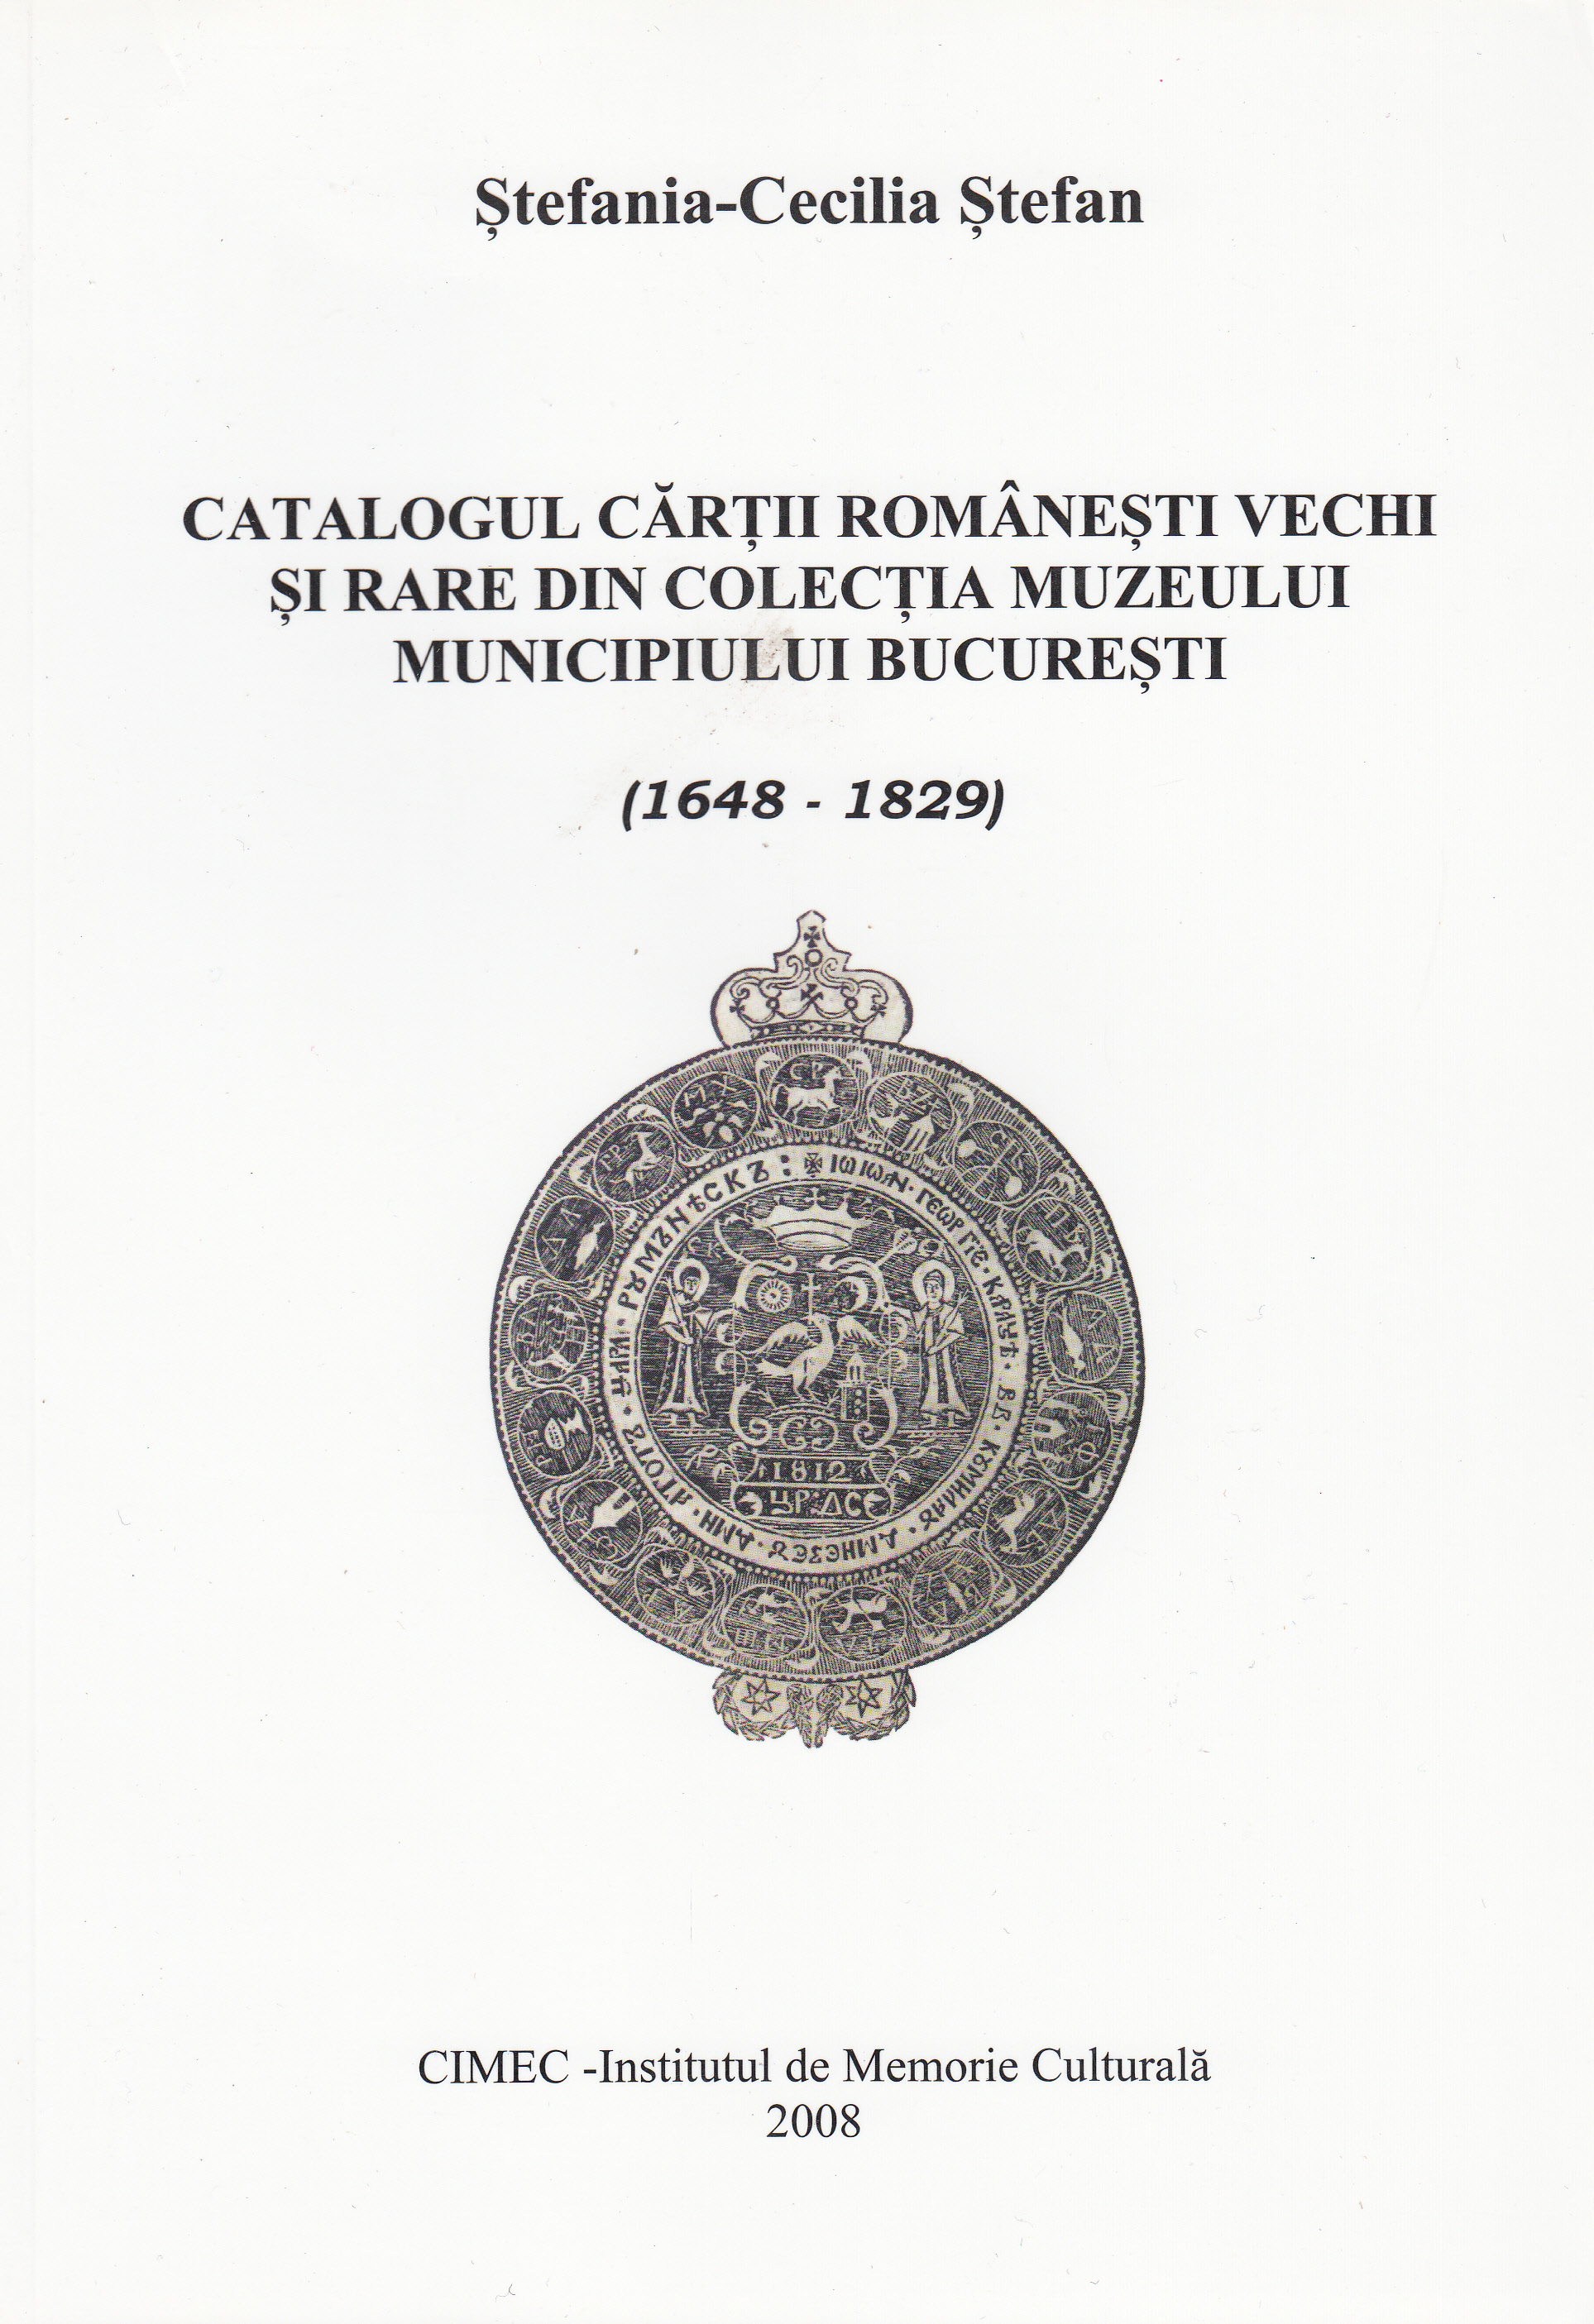 Catalogul cartii romanesti vechi si rare din colectia Muzeului Bucuresti - Stefania-Cecilia Stefan